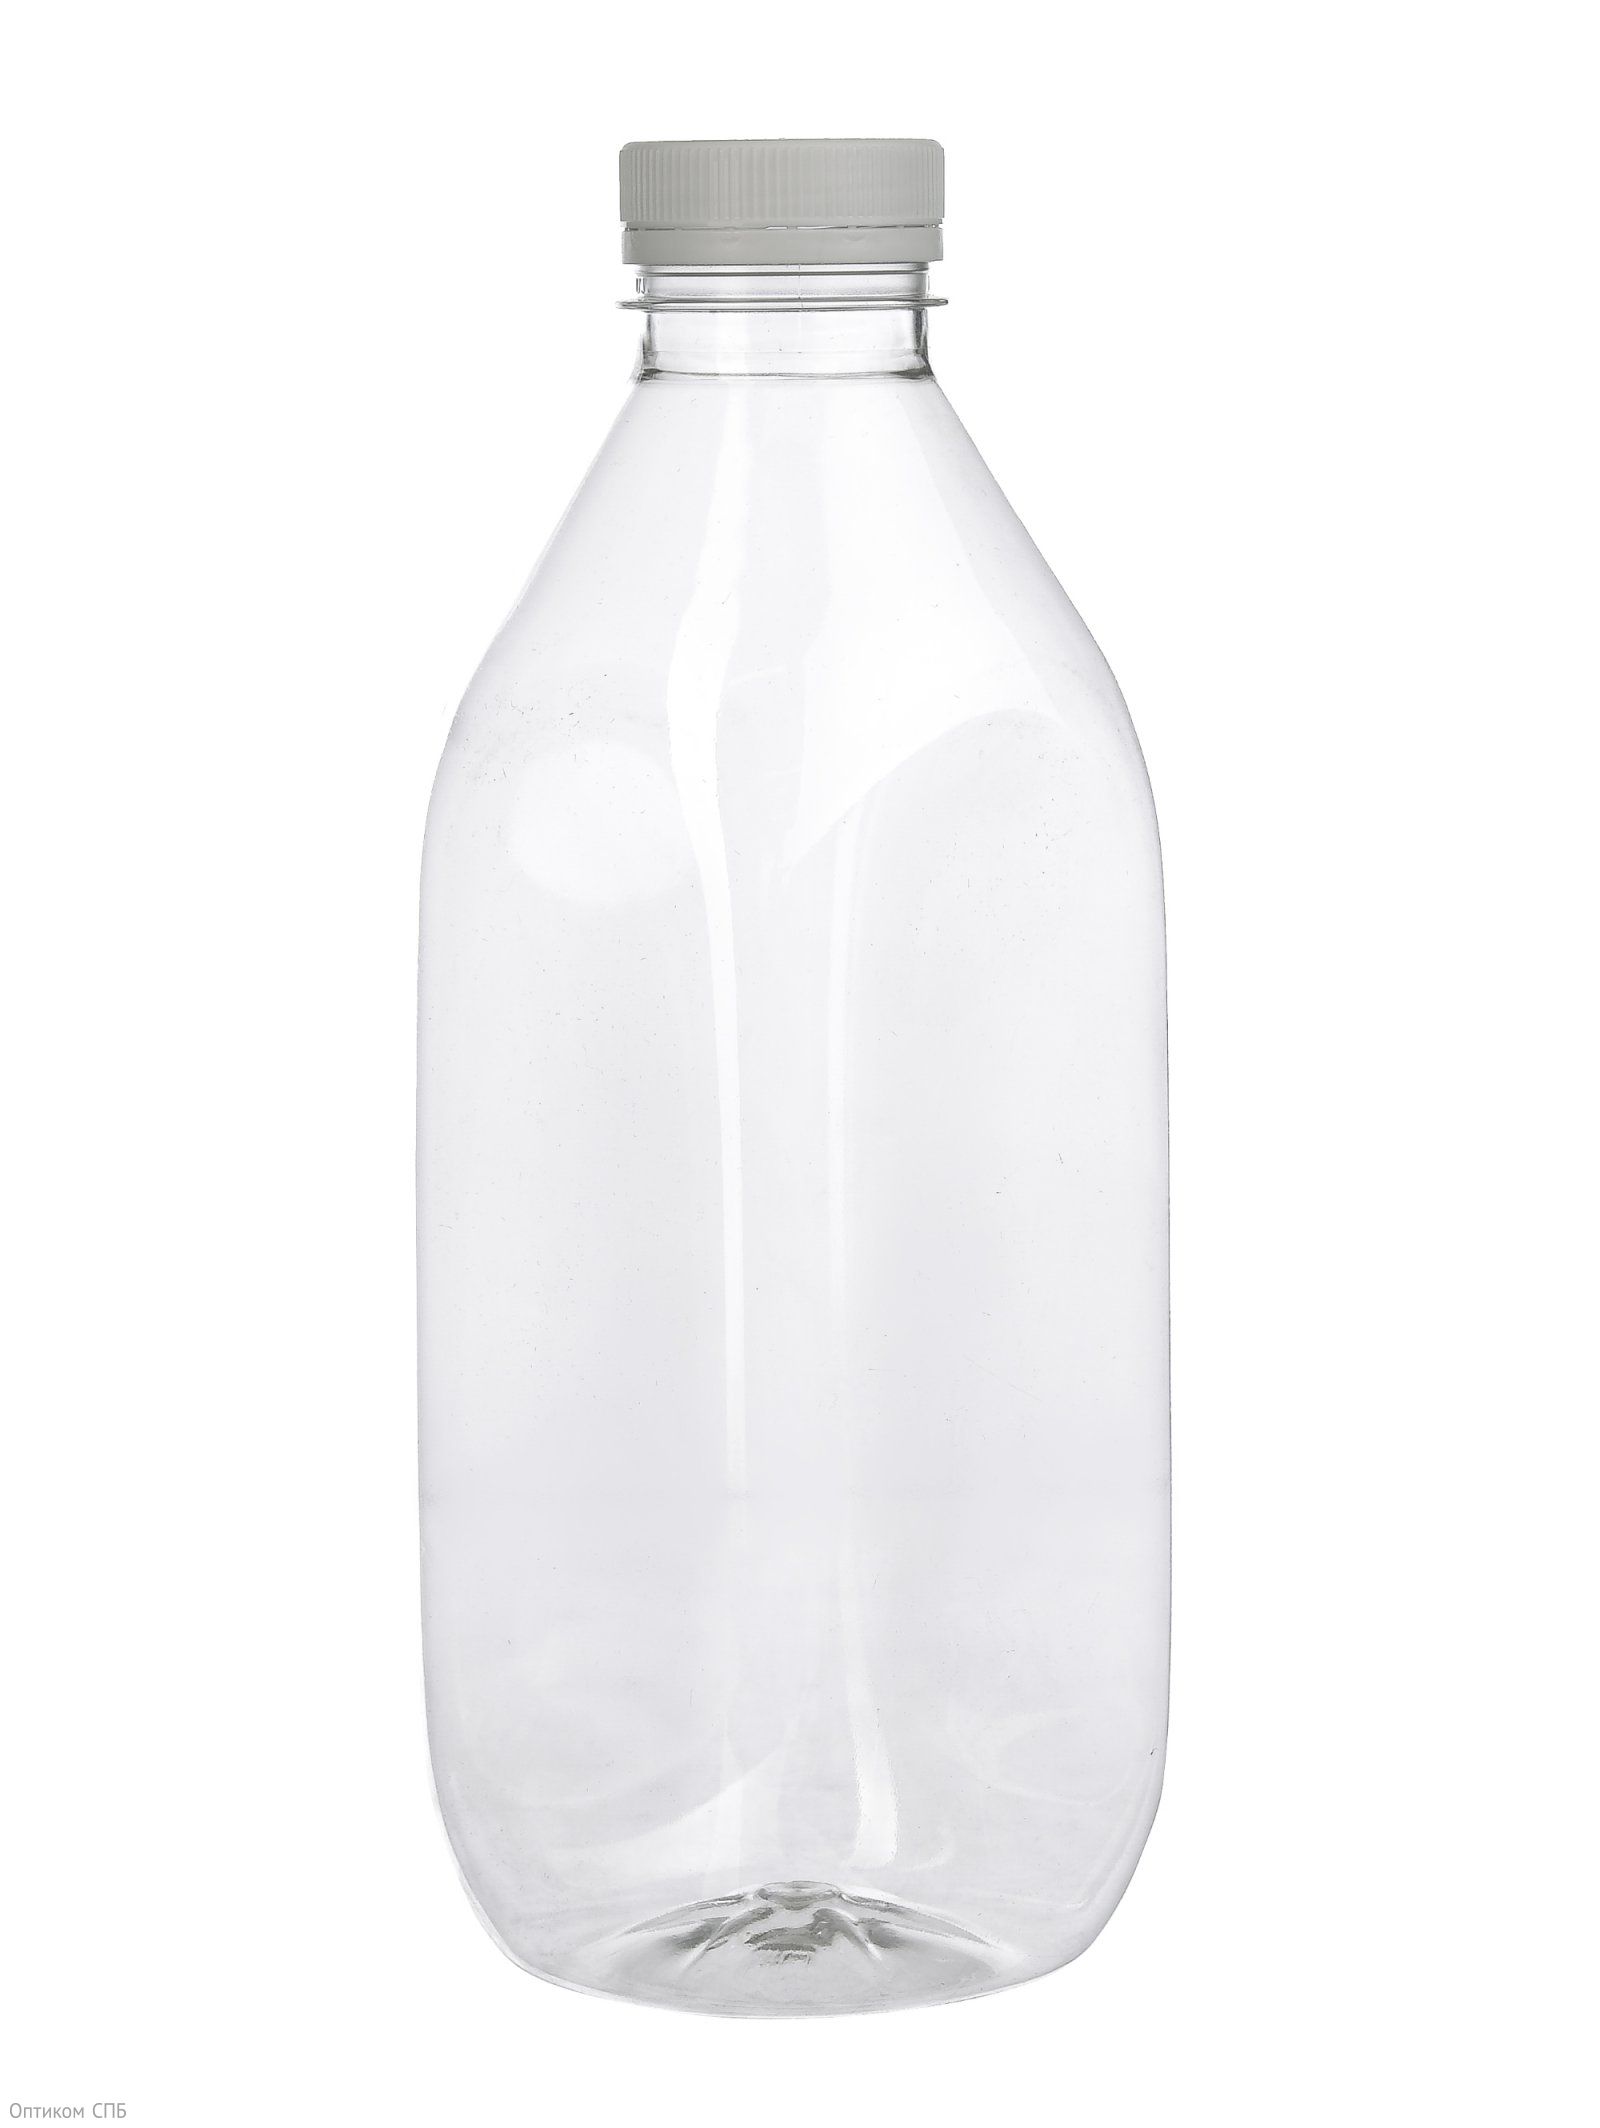 Бутылка пластиковая прозрачная из ПЭТ, квадратной формы. Предназначена для хранения и транспортировки различных жидкостей, в том числе пищевых продуктов, таких как свежевыжатые соки, вода, молочные и кисломолочные продукты, газированные напитки. Прозрачность бутылки позволяет, не открывая ее, увидеть, что находится внутри. Диаметр горла бутылки — 38 мм. Объем — 1000 мл. В упаковке 50 штук.